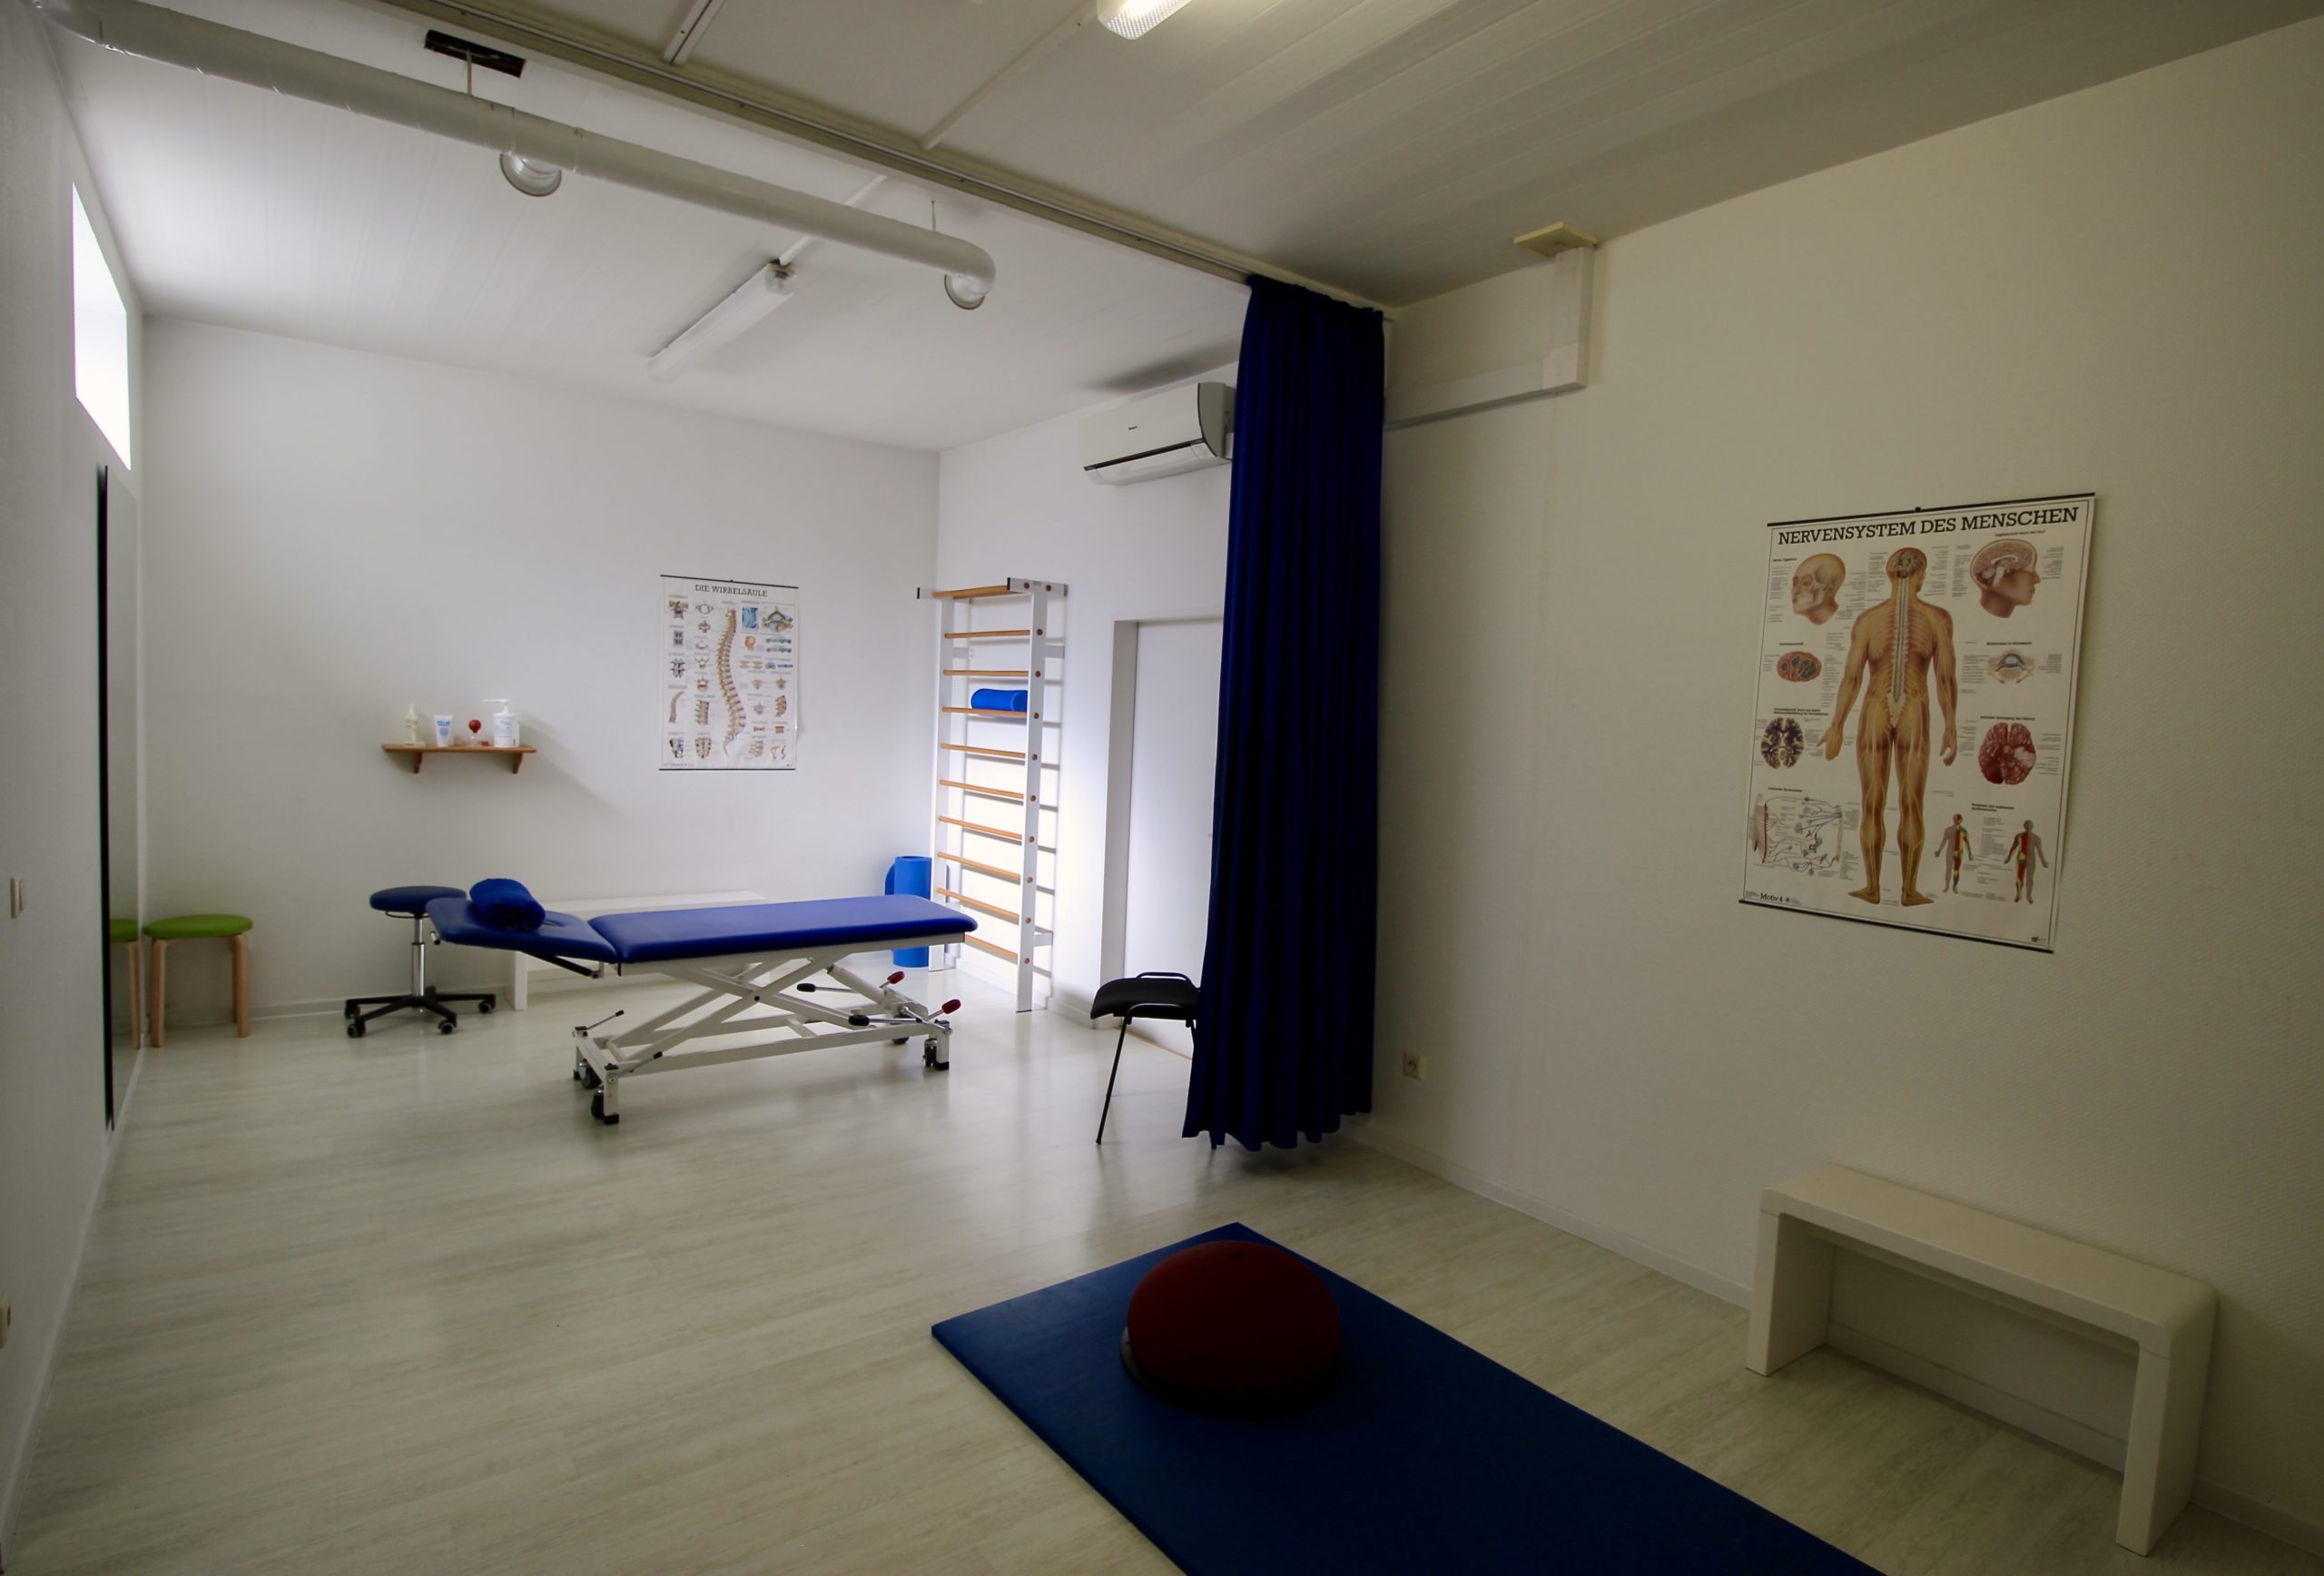 Ein Therapieraum mit Liege, Matte und diversen Geräten für die Einzel- und Gruppentherapie in der Physiotherapiepraxis Hinkämper-Kreul